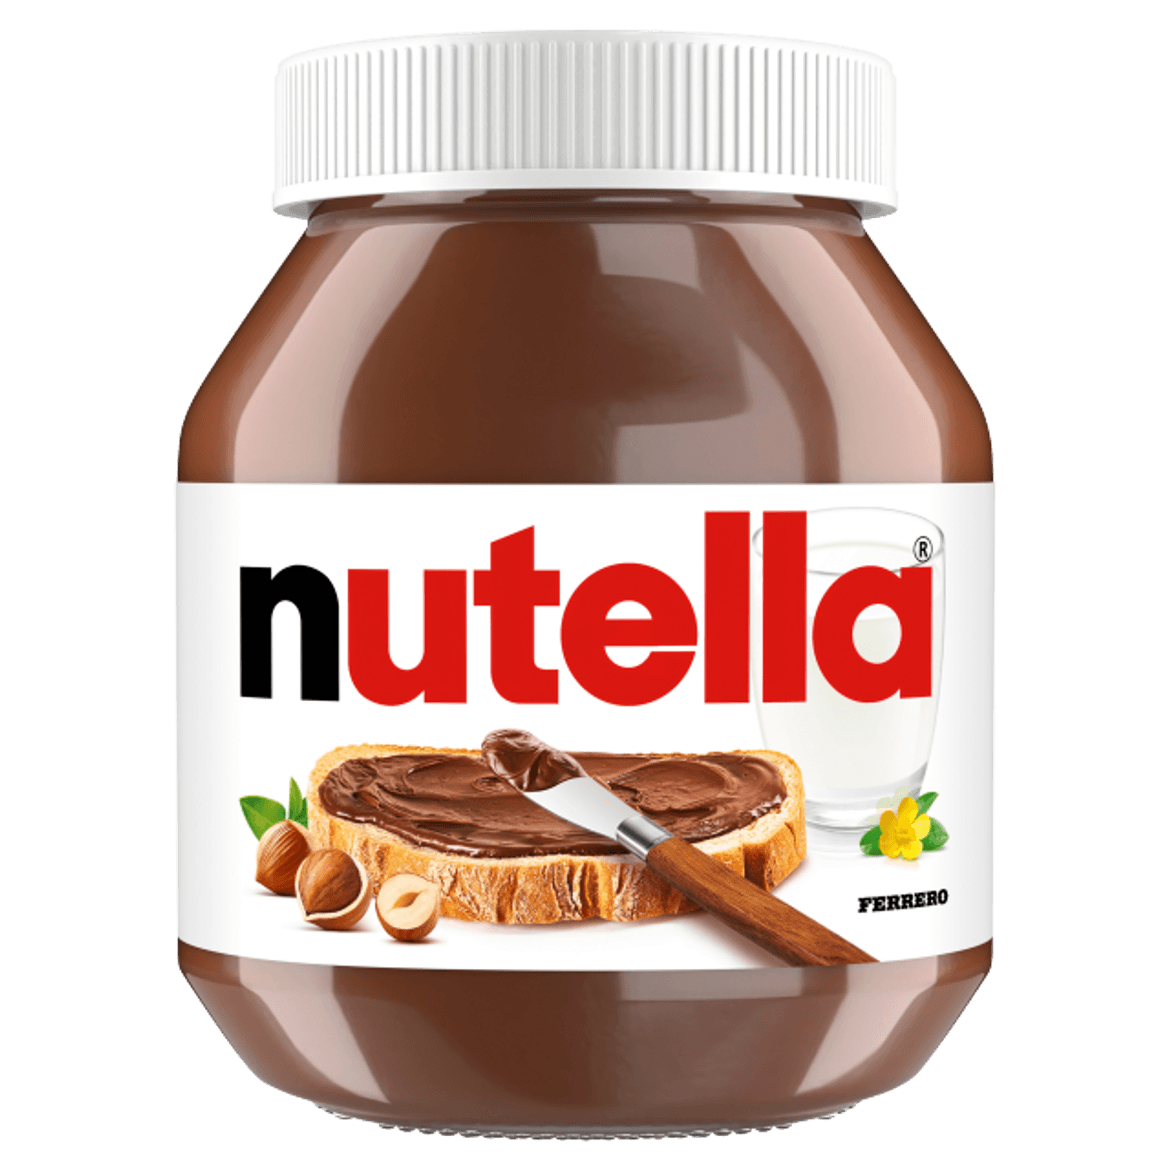 Nutella kenhetÅ‘ kakaÃ³s mogyorÃ³krÃ©m